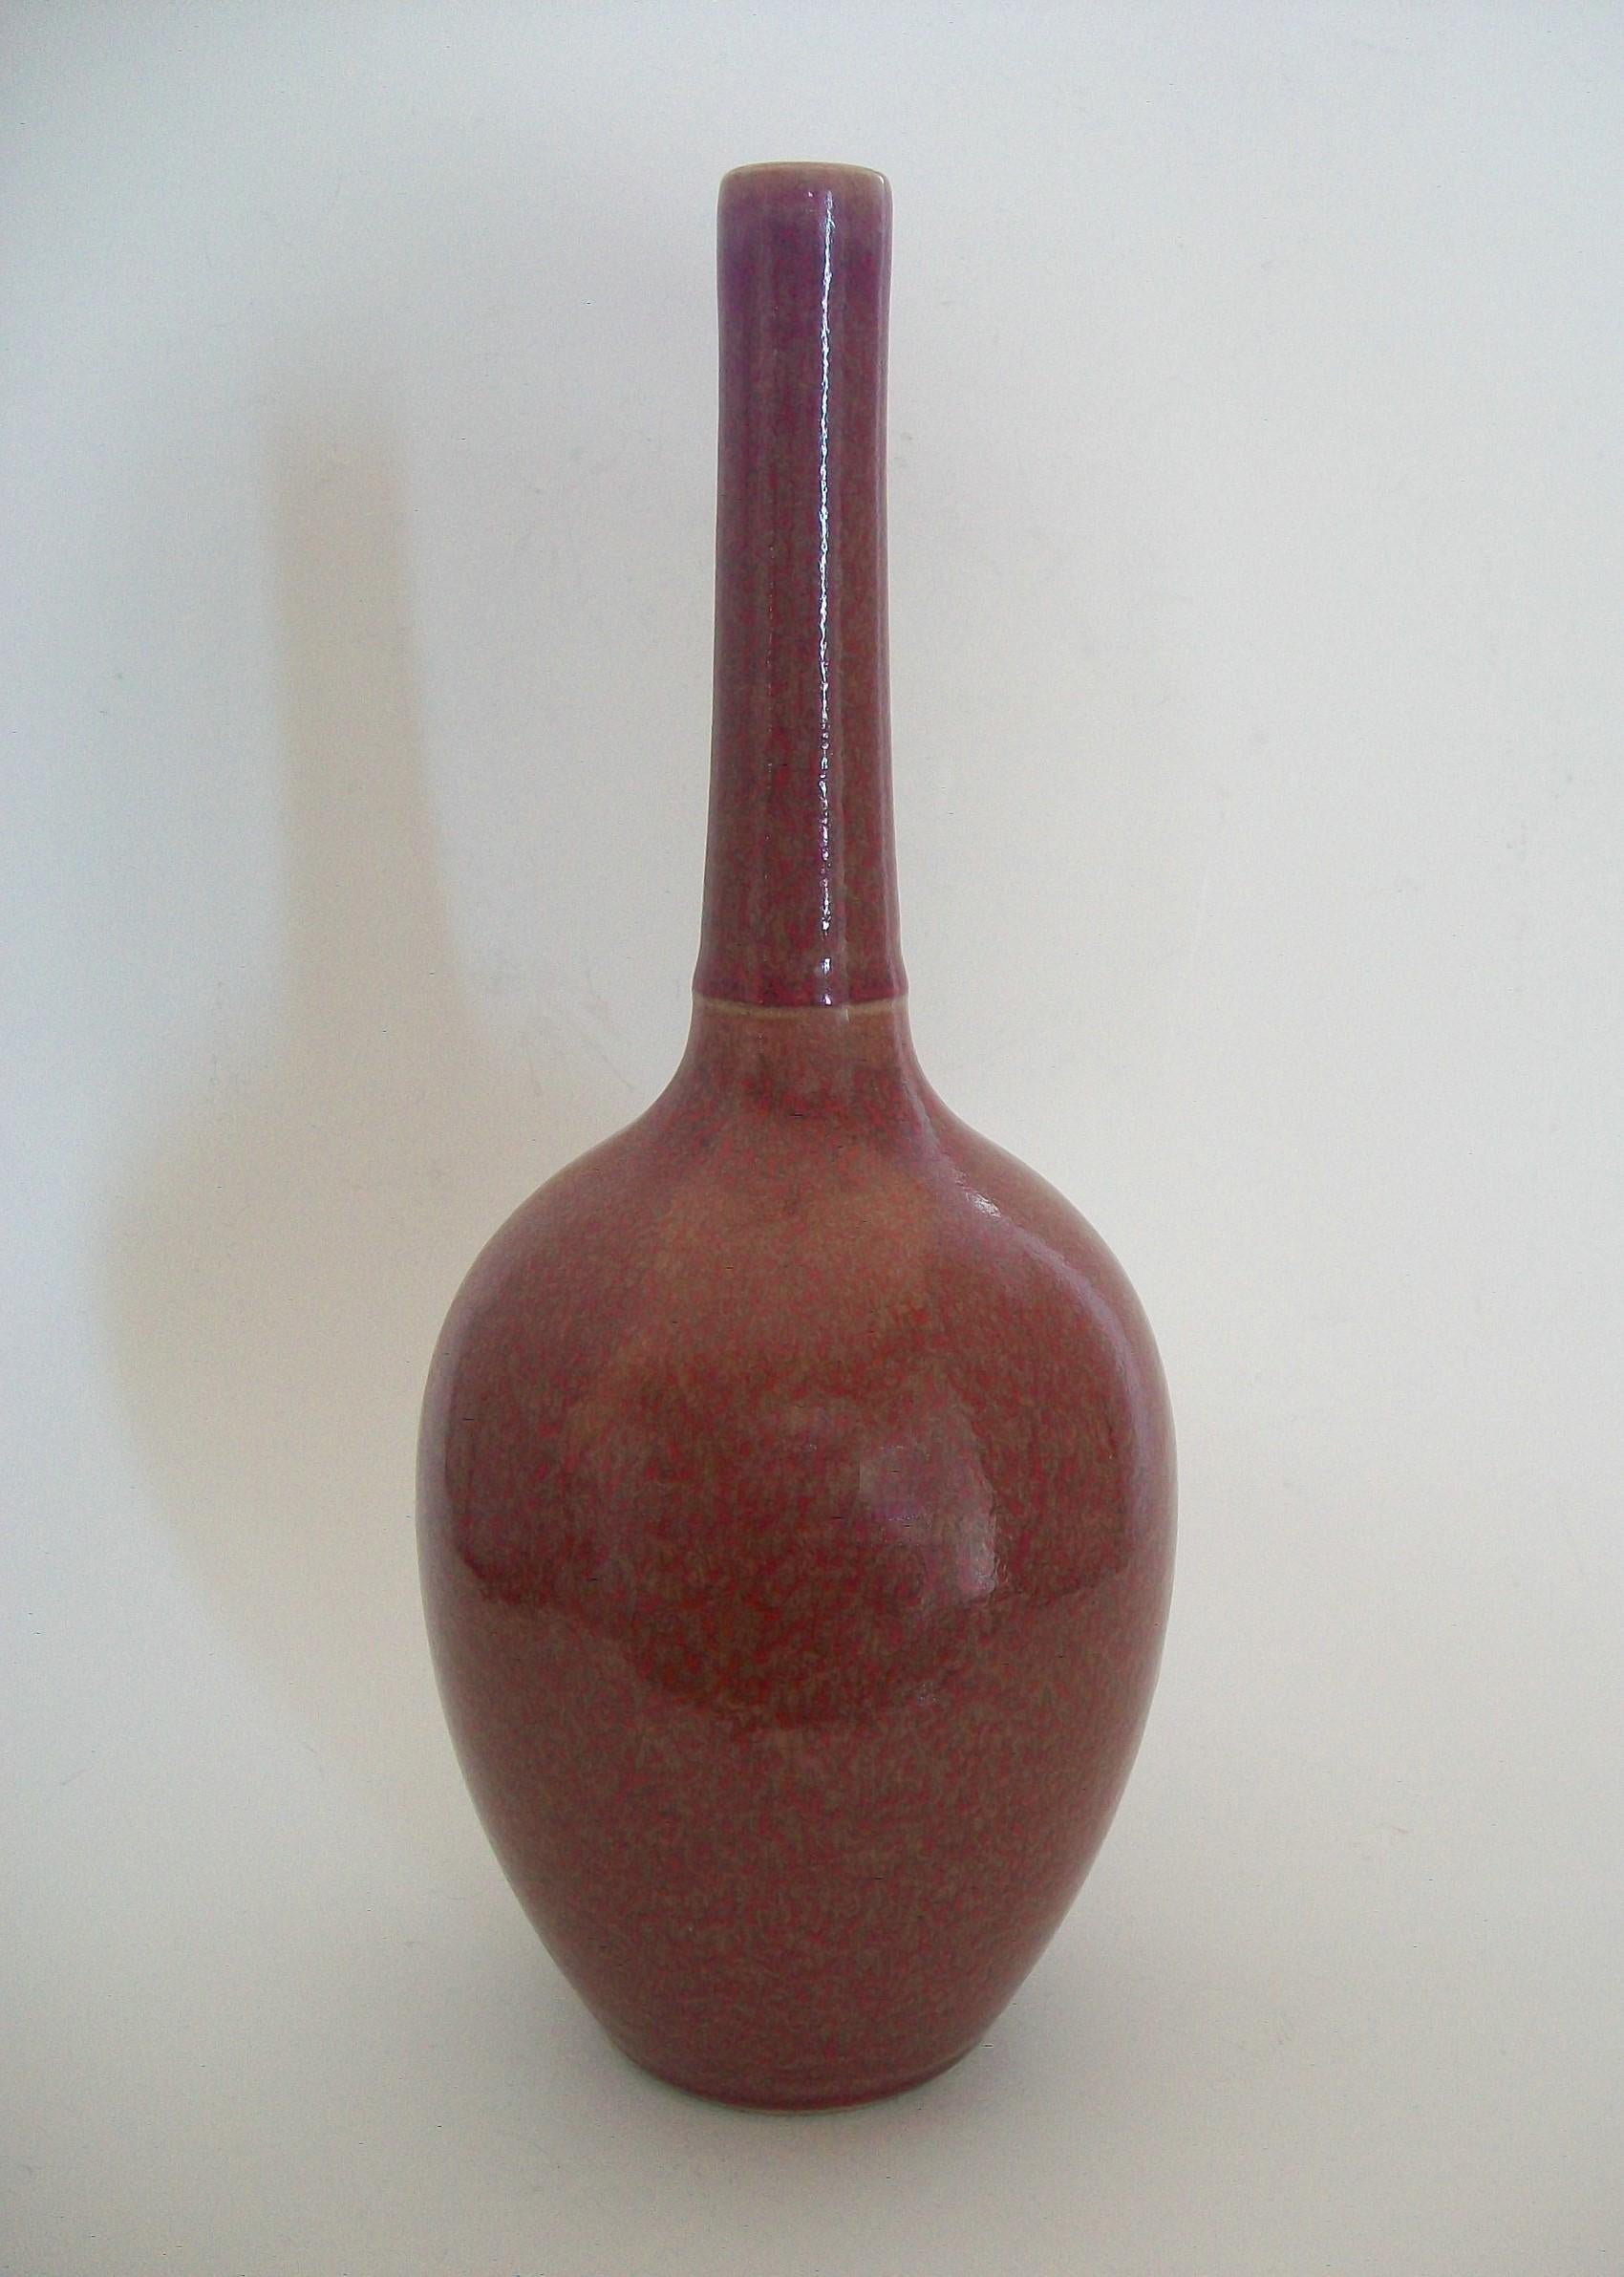 Antike Flaschenhalsvase aus Qing-Keramik mit Pfirsichblütenglasur - elegante Form mit einer einzelnen Schnur am länglichen Hals - gesprenkelte Glasur mit roten Sprenkeln über einer rosa-beigen Grundfarbe - Sechs-Zeichen-Marke auf dem Sockel in